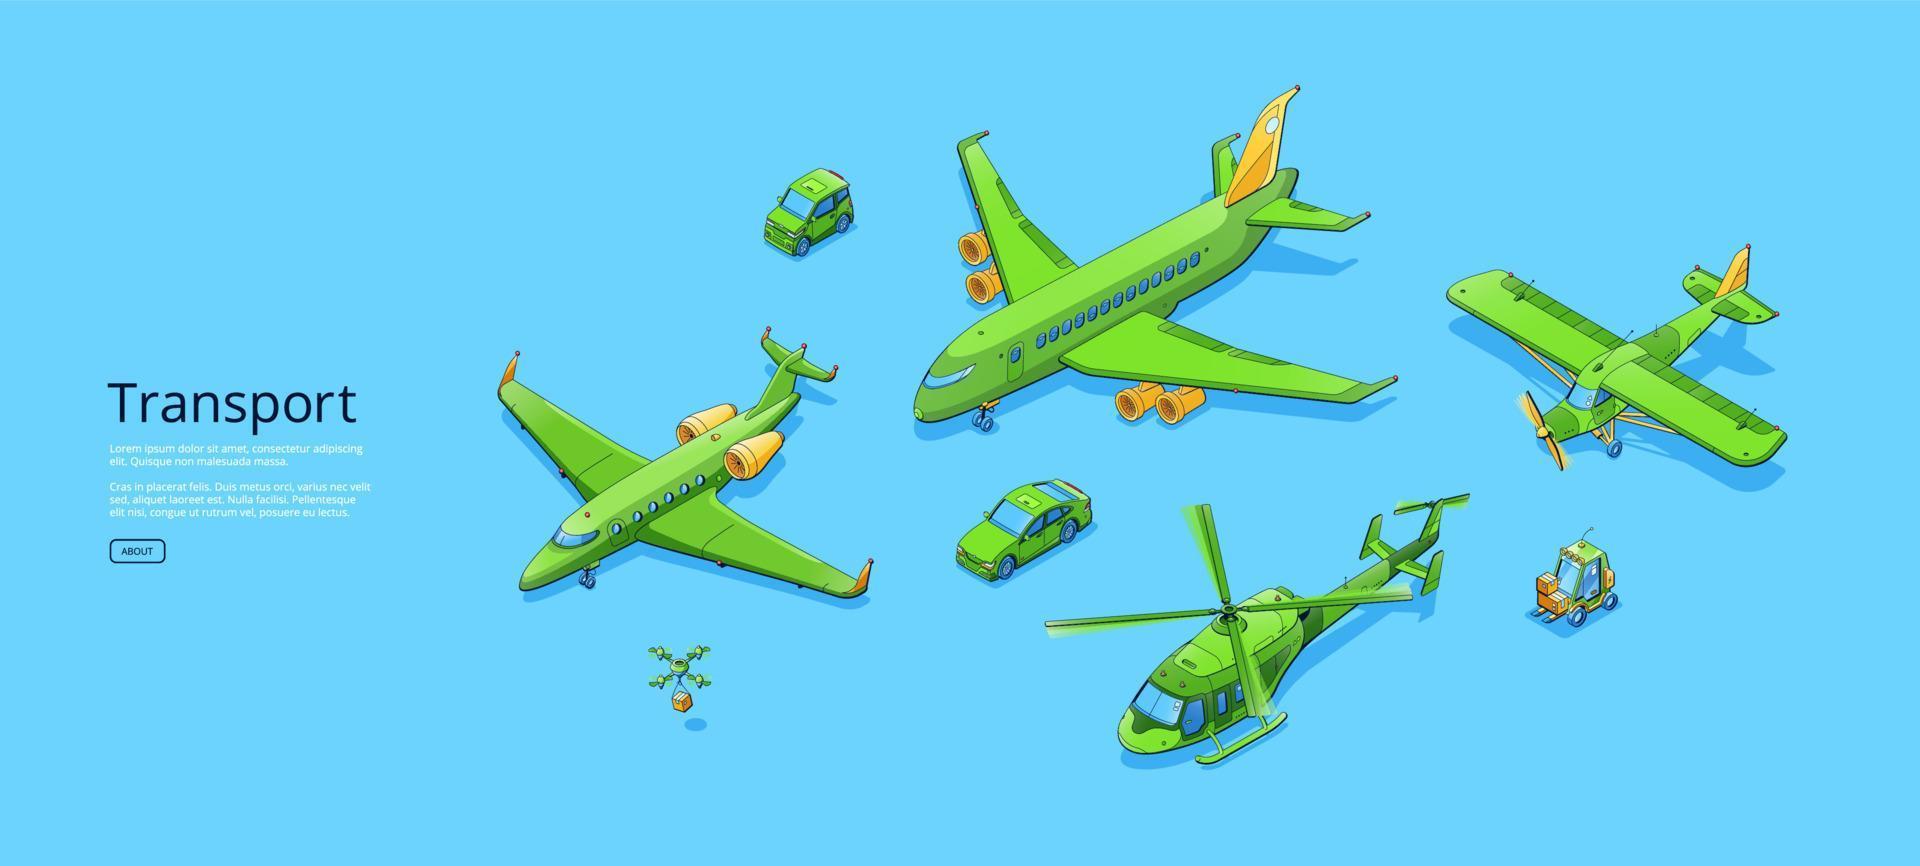 trasporto manifesto con aeroplani, elicottero, macchine vettore